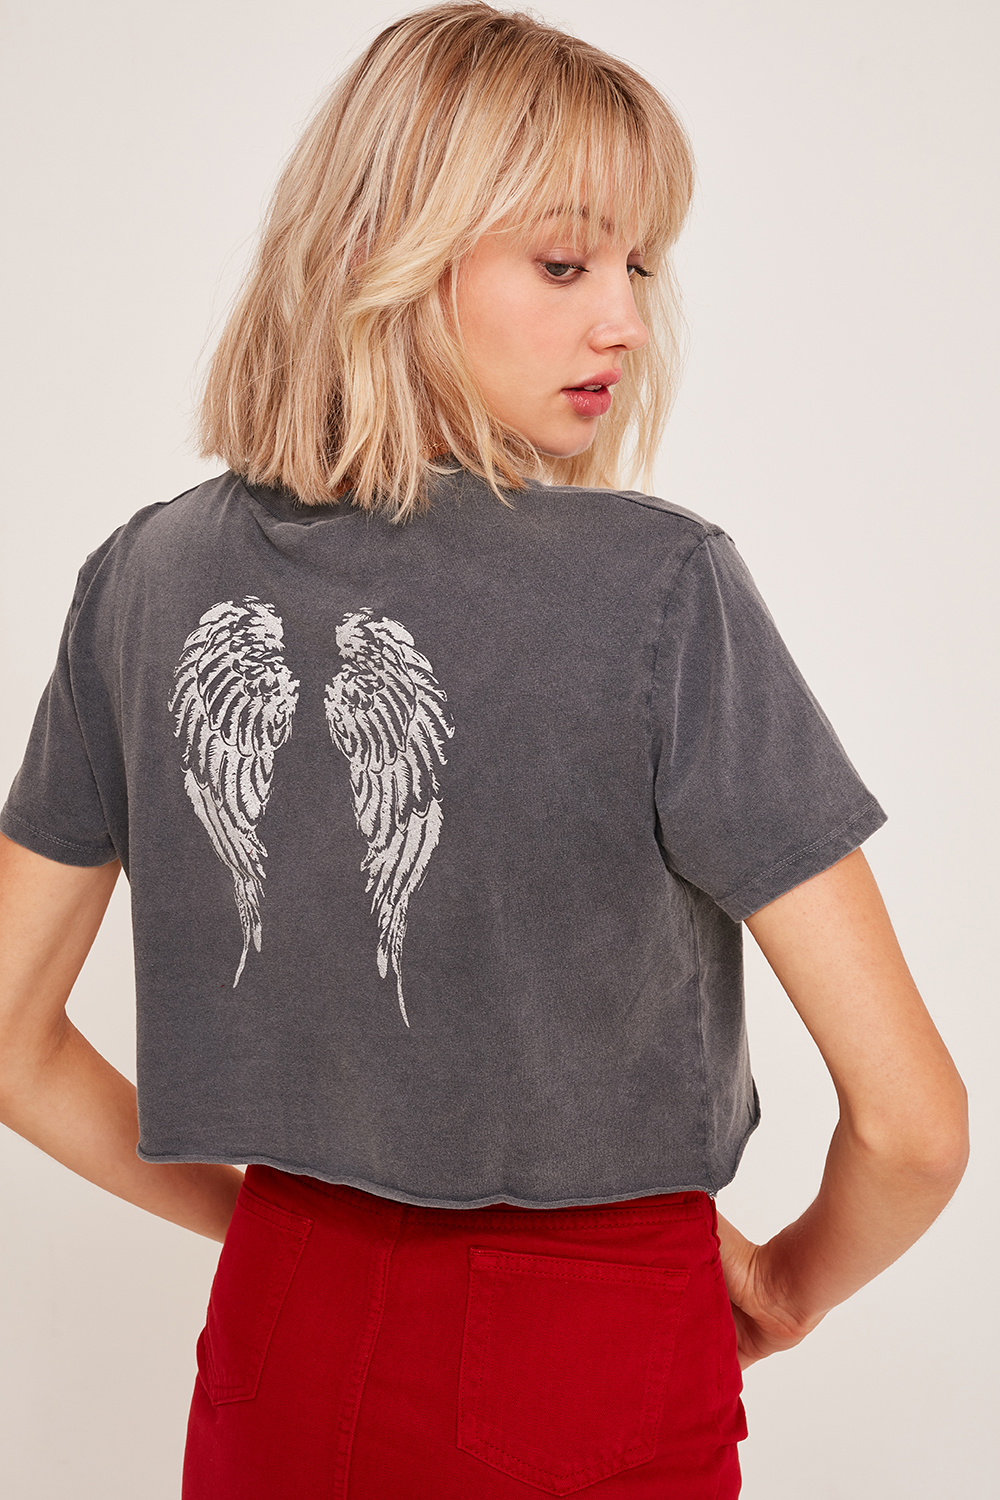 T-shirt Engel und Flügel